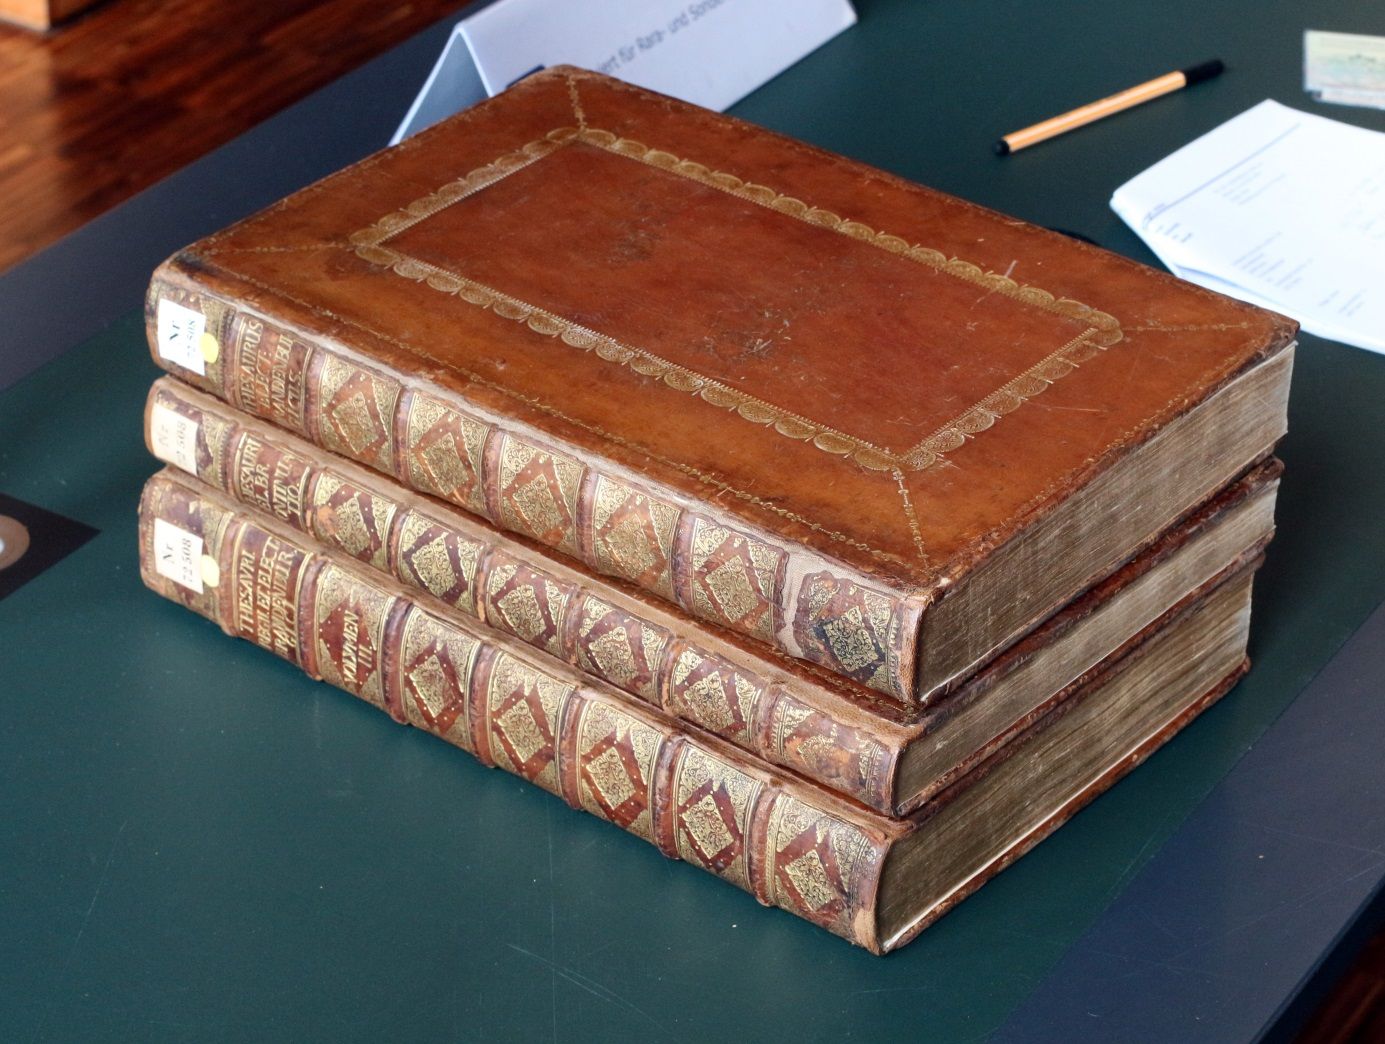 Die drei Bände des Thesaurus Brandenburgicus selectus, Berlin 1696, 1698 und 1701 der Humboldt-Universität zu Berlin (Historische Sammlungen; Signatur 72508:1:F2/Rara). Foto: Achim Stiegel